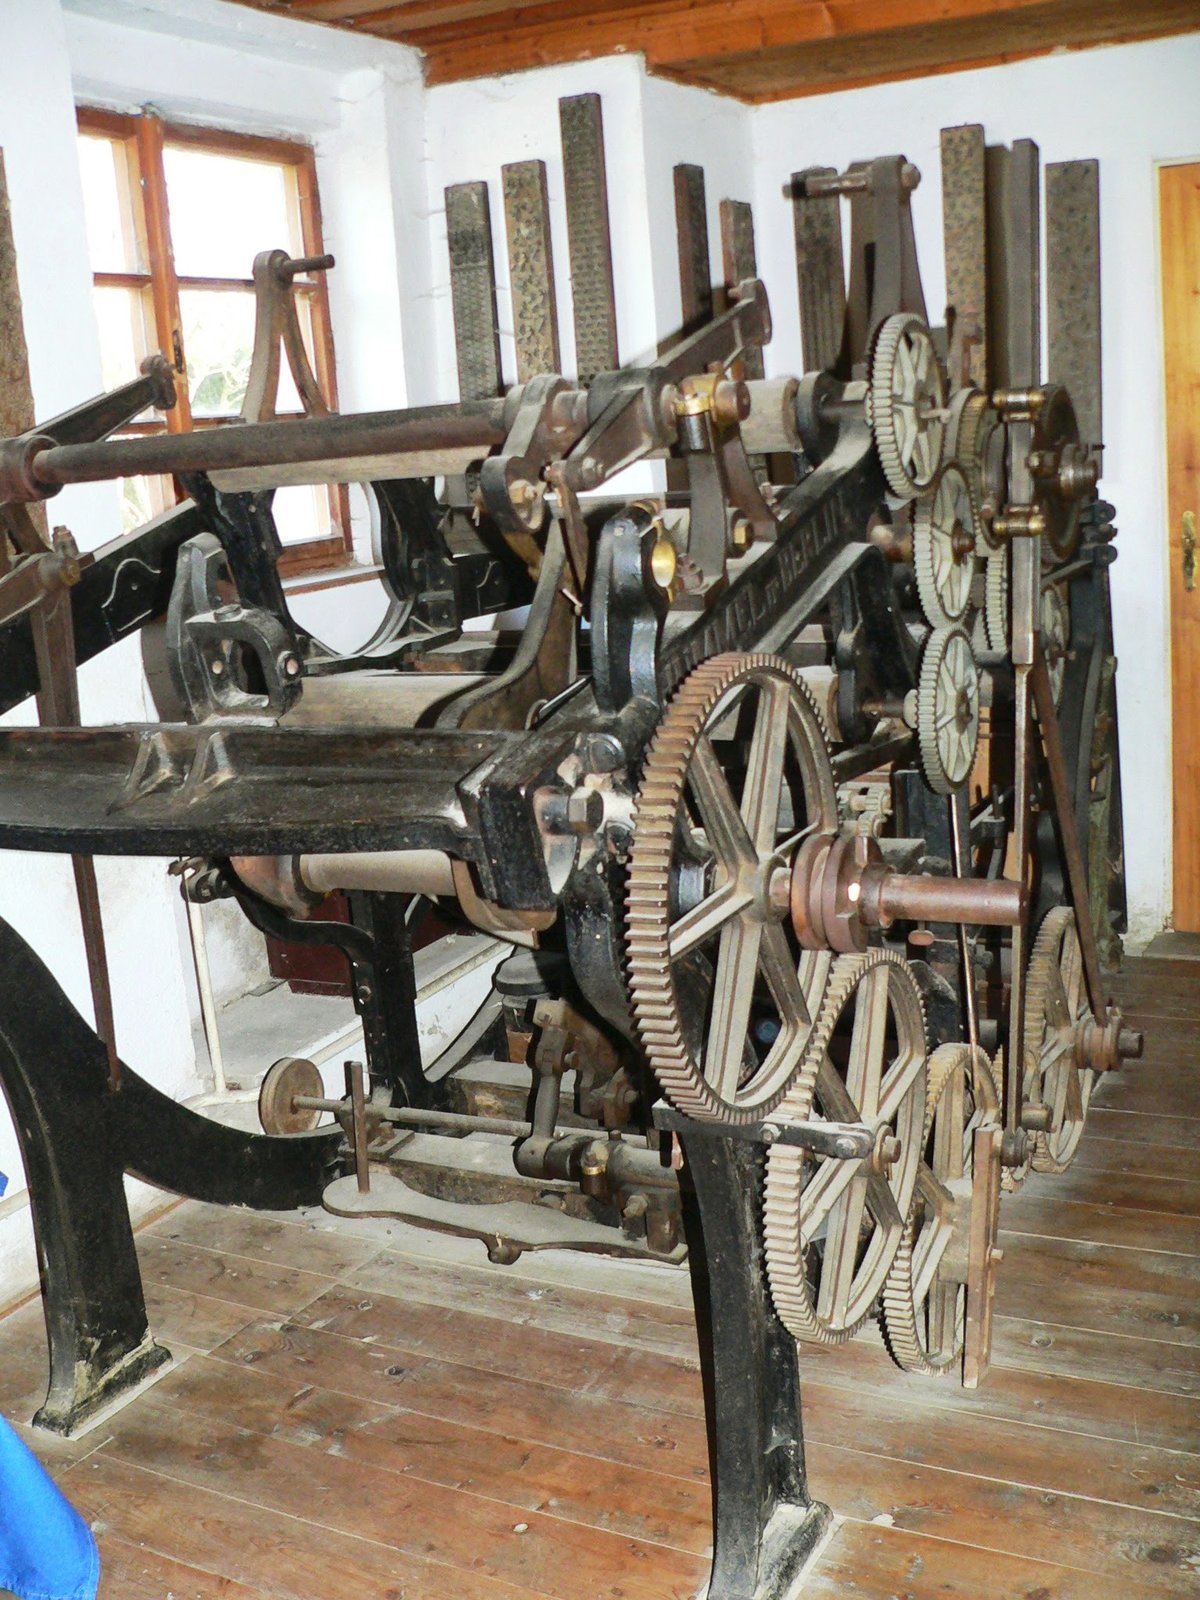 Stroje jsou původní, i více než dvě stovky let staré.